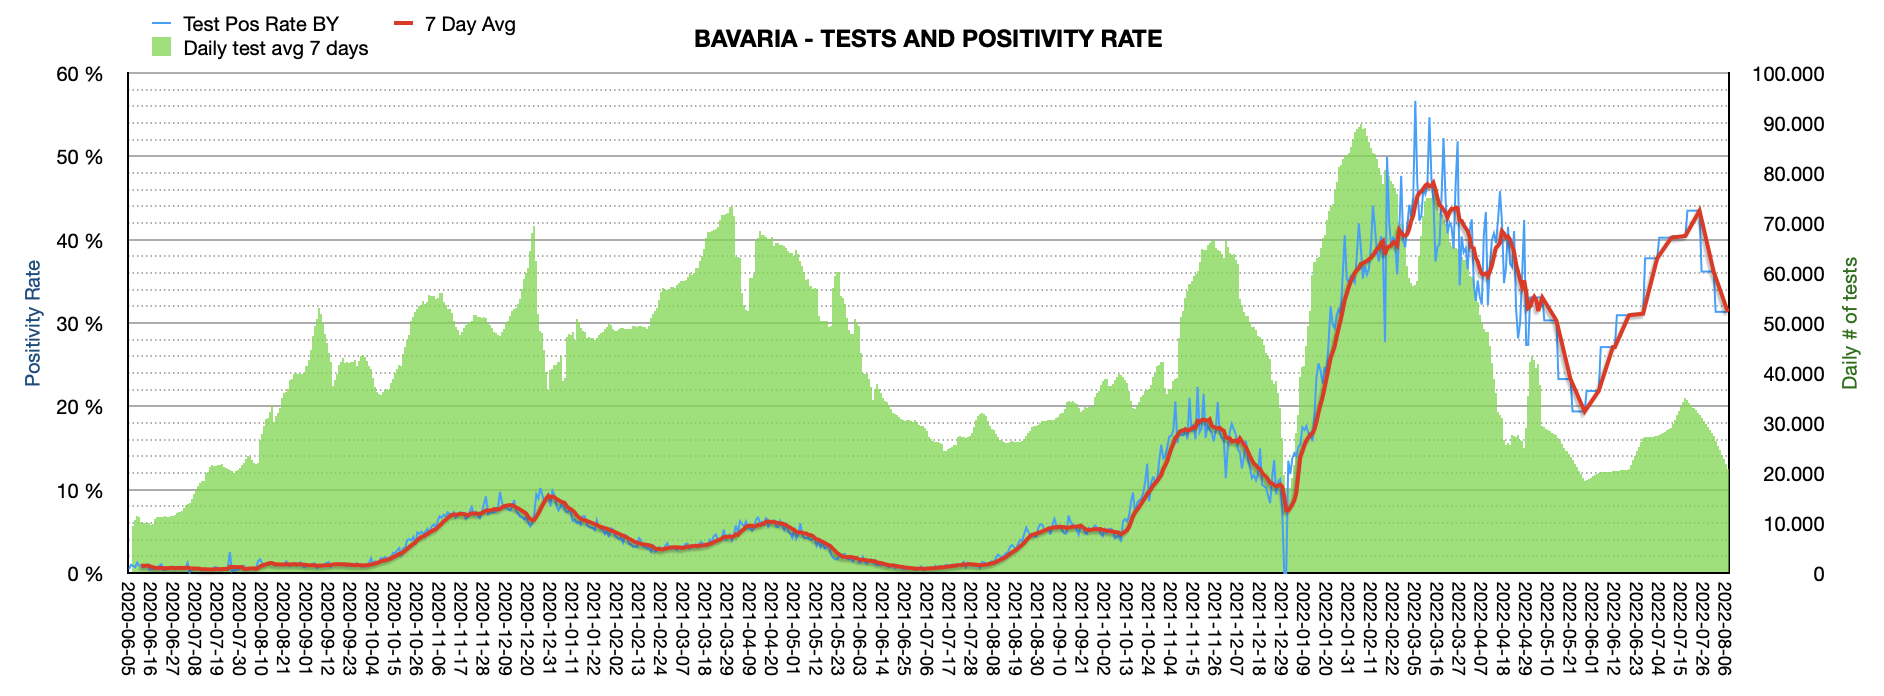 Grafik mit durchgeführten PCR Tests pro Tag in Bayern seit Juni 2020. Man erkennt: In der ersten Augustwoche sank die Positivrate von 36,1% auf 31,4%. Die Zahl der Tests pro Tag ist mit ca. 21.000 am Tag weit vom Maximum von 100.000 Tests/Tag entfernt.